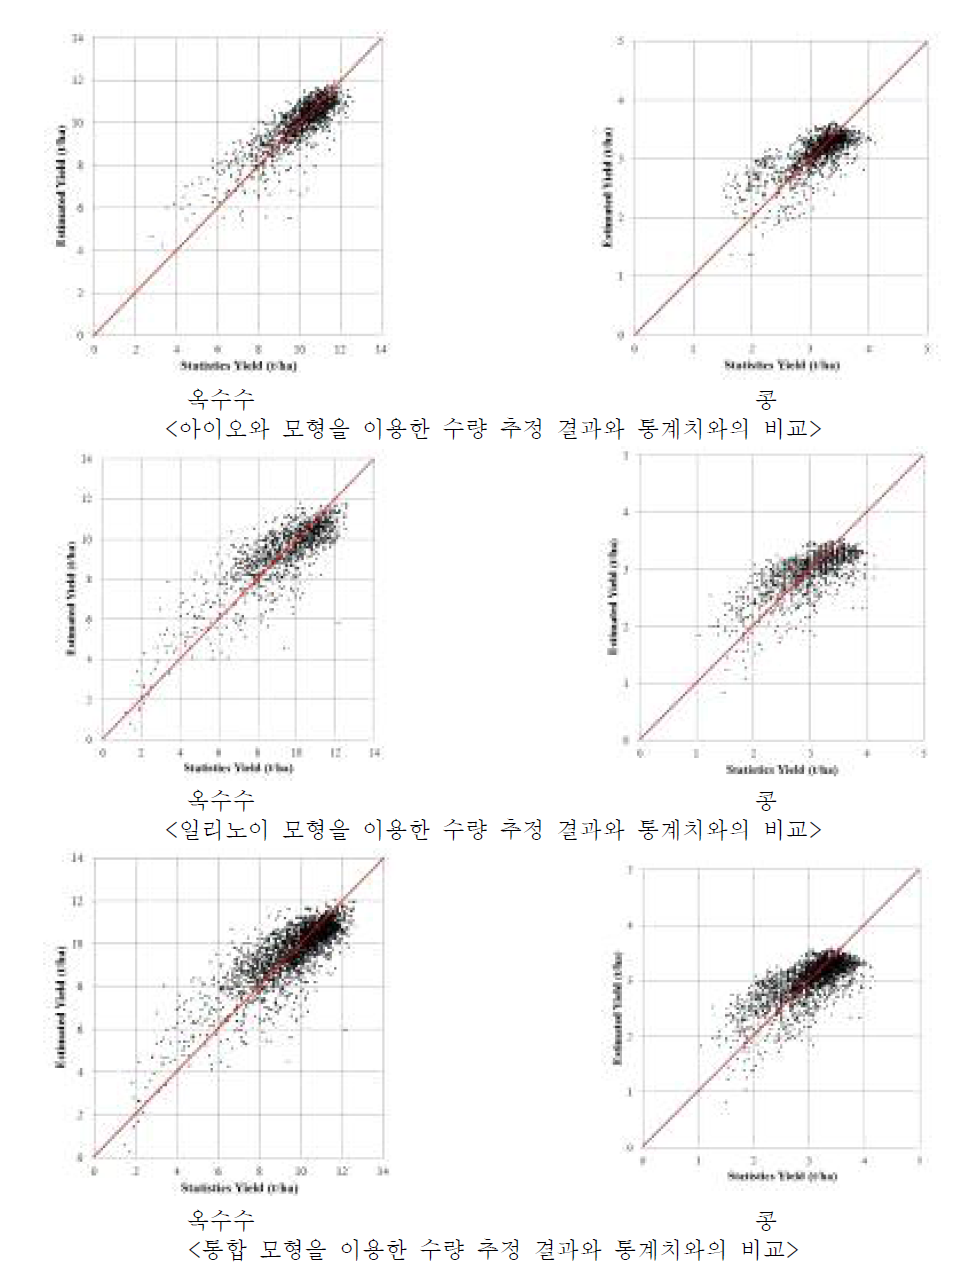 수량 추정 모형 결과와 통계치의 비교